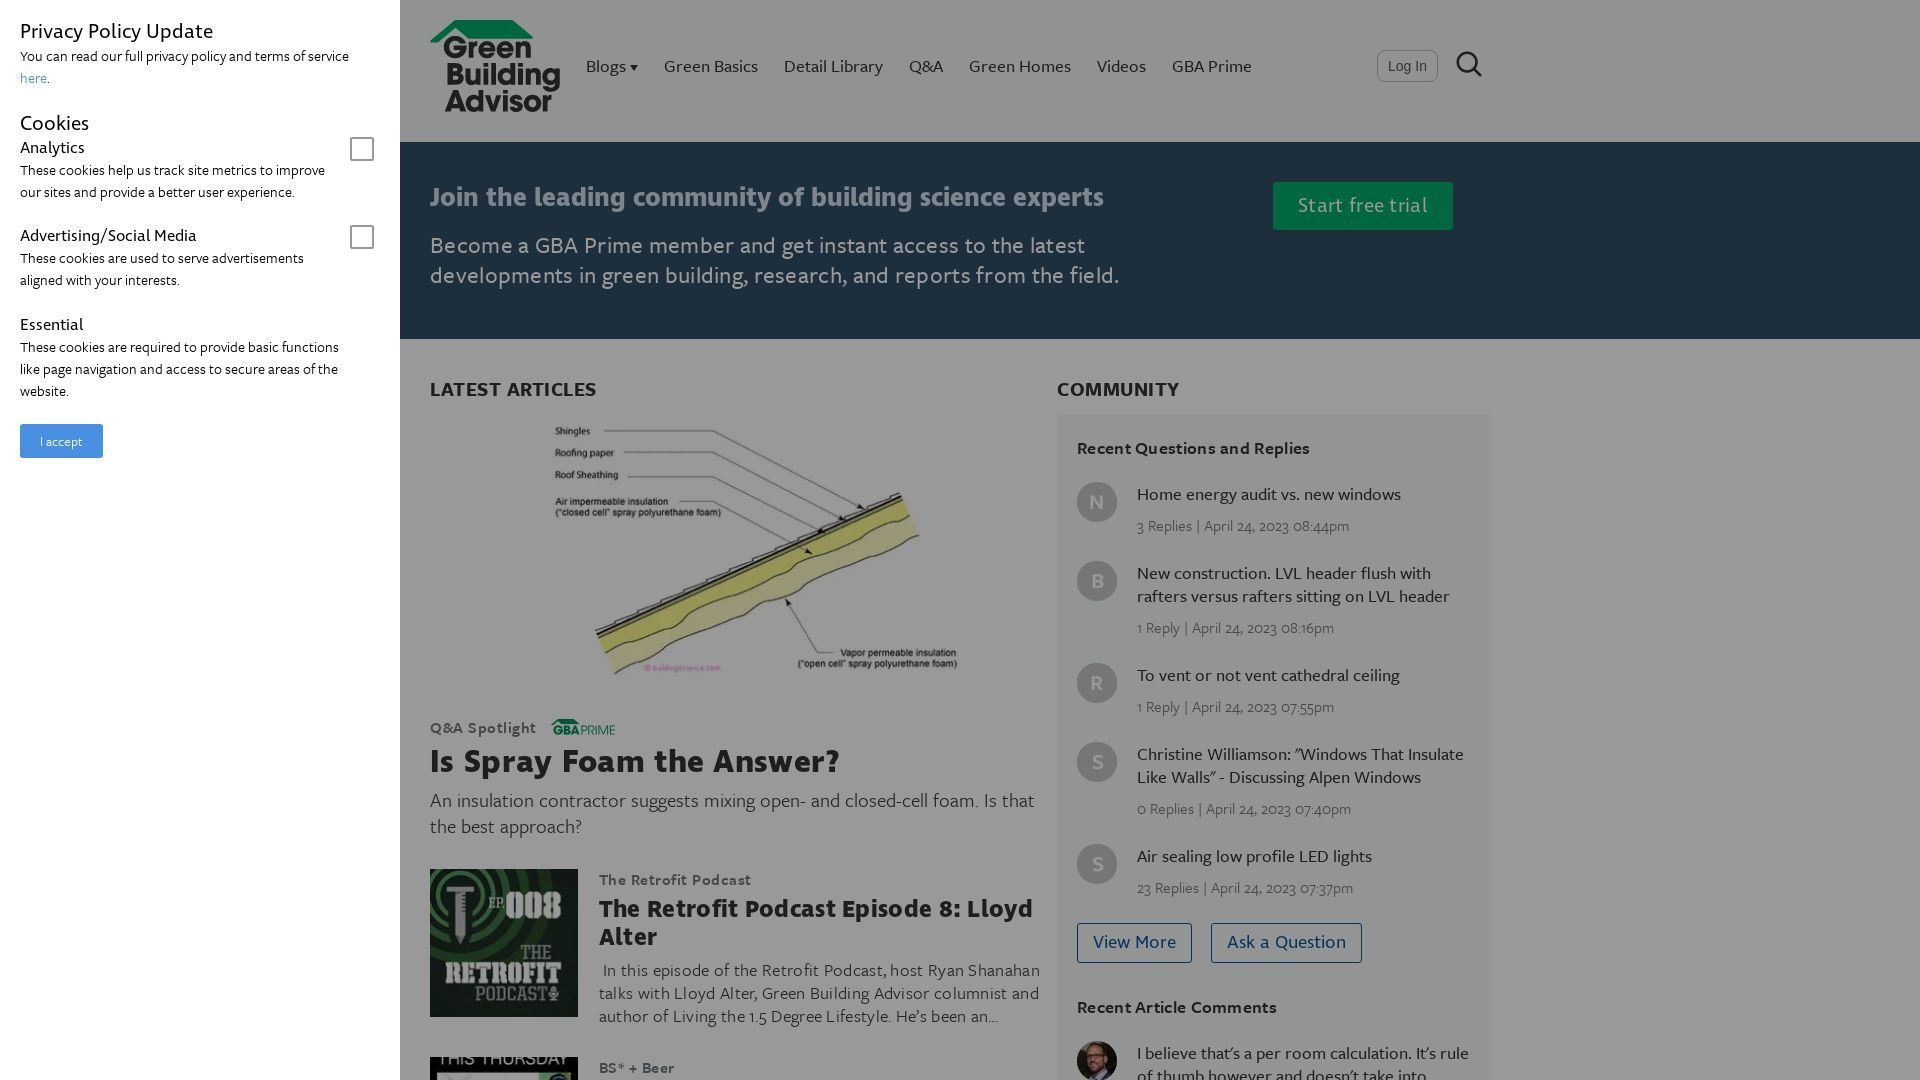 Stato del sito web greenbuildingadvisor.com è   ONLINE